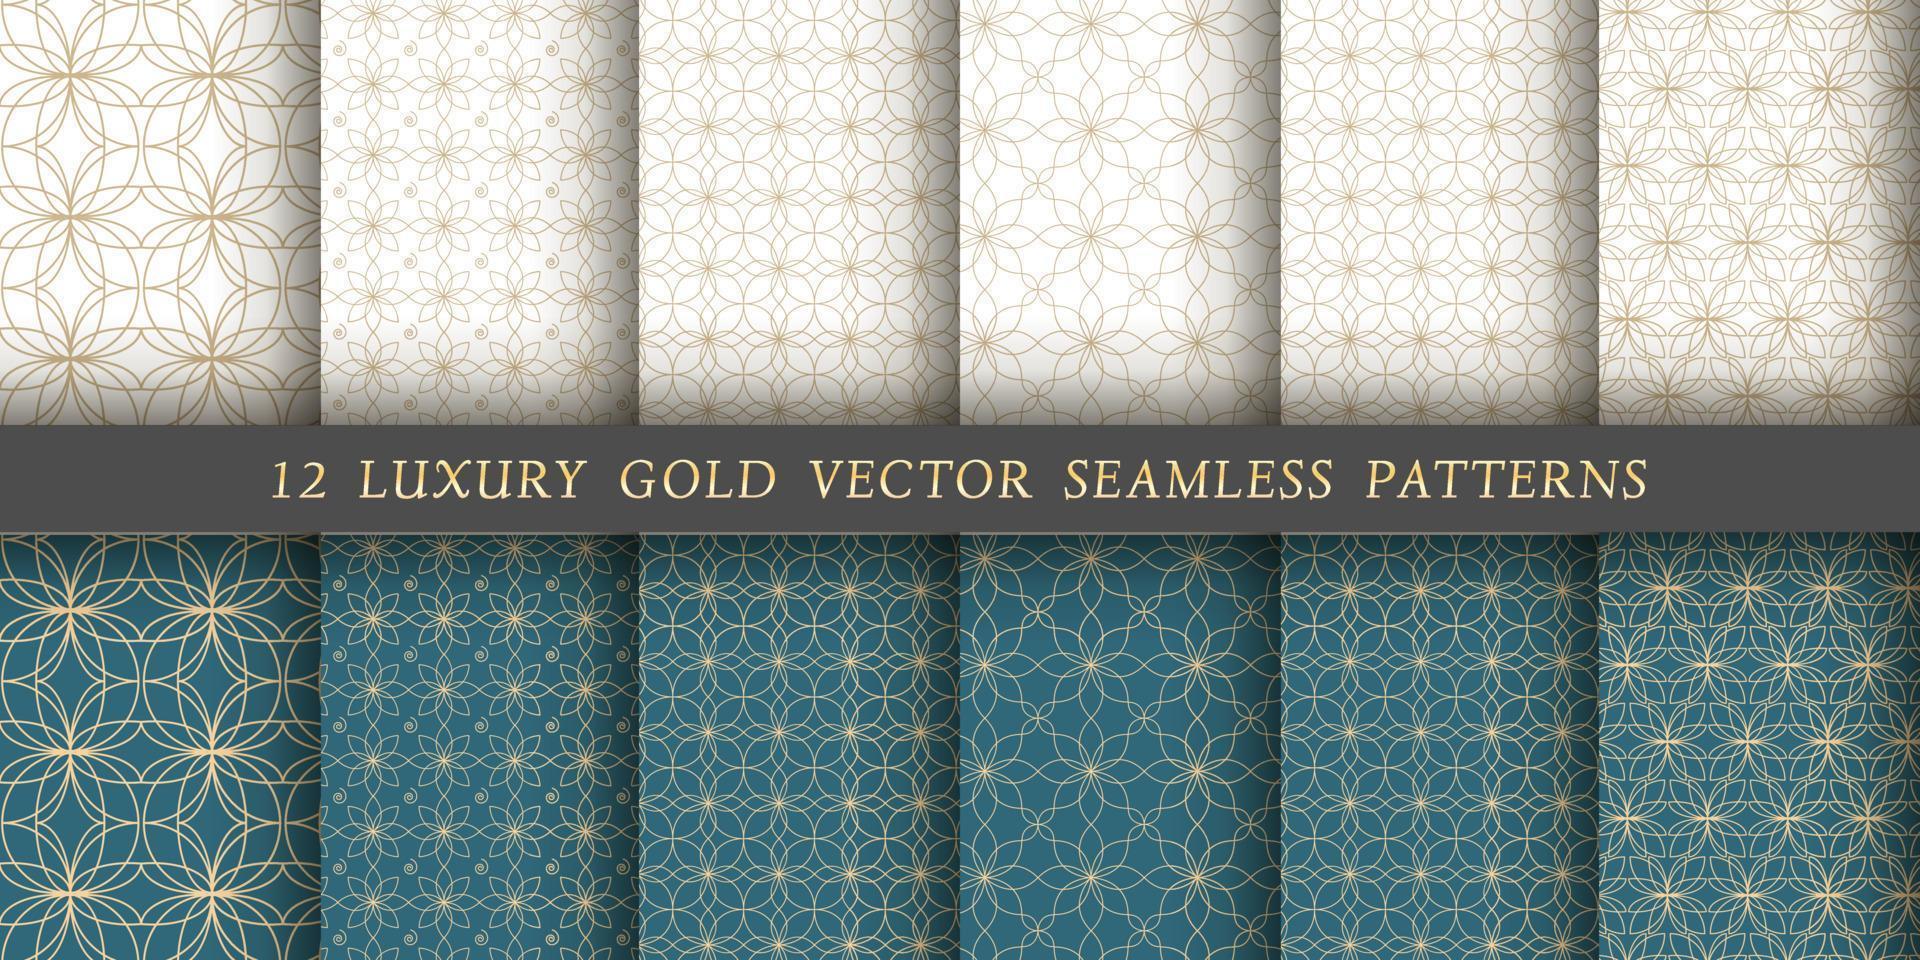 conjunto de 12 padrões sem emenda de vetores. padrões florais de ouro sobre um fundo branco e esmeralda. vetor